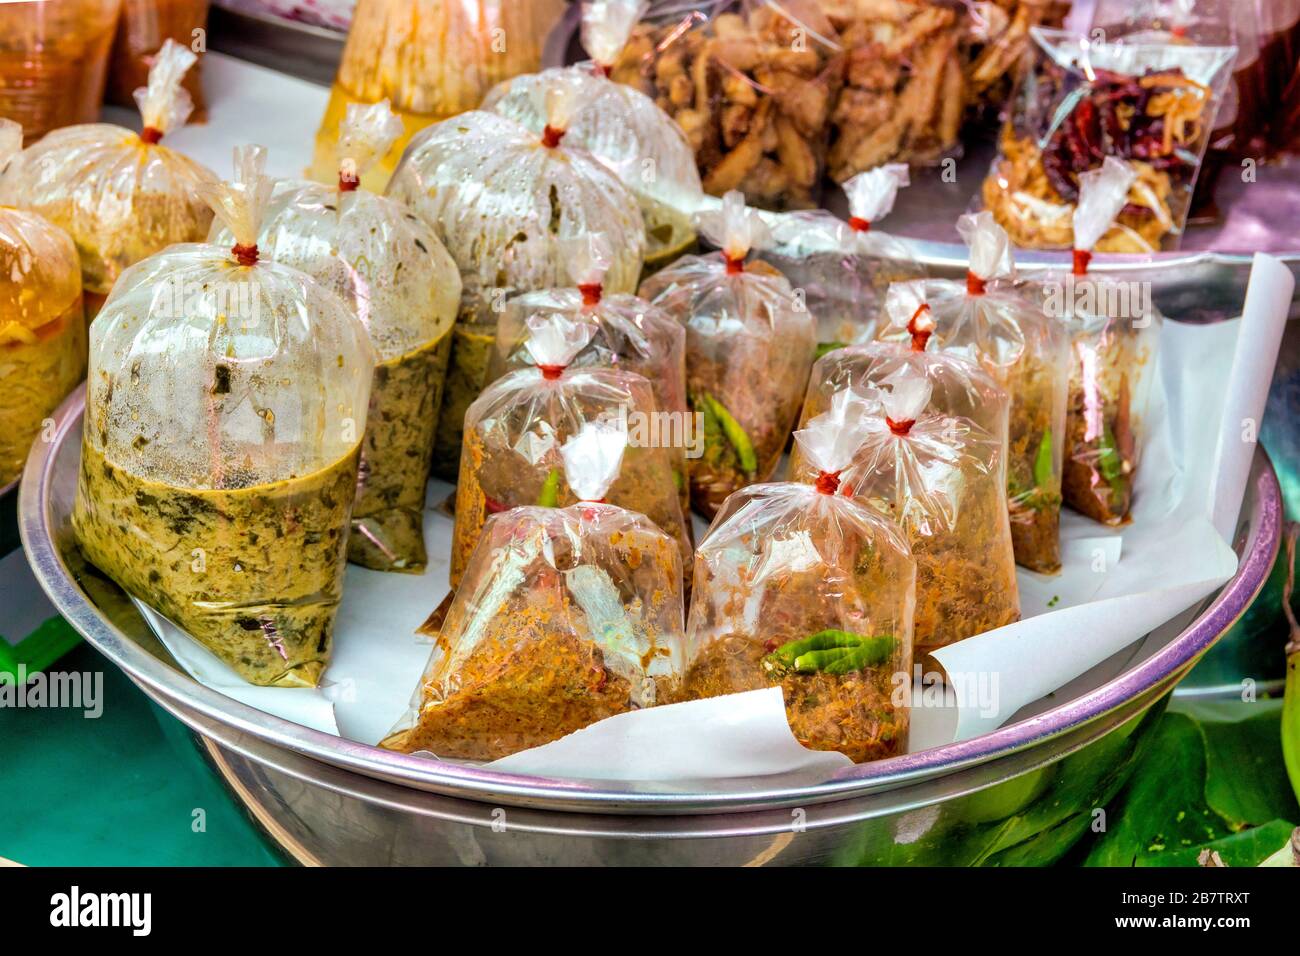 Traditionelle thailändische Soßen werden in Plastiktüten verkauft Stockfoto